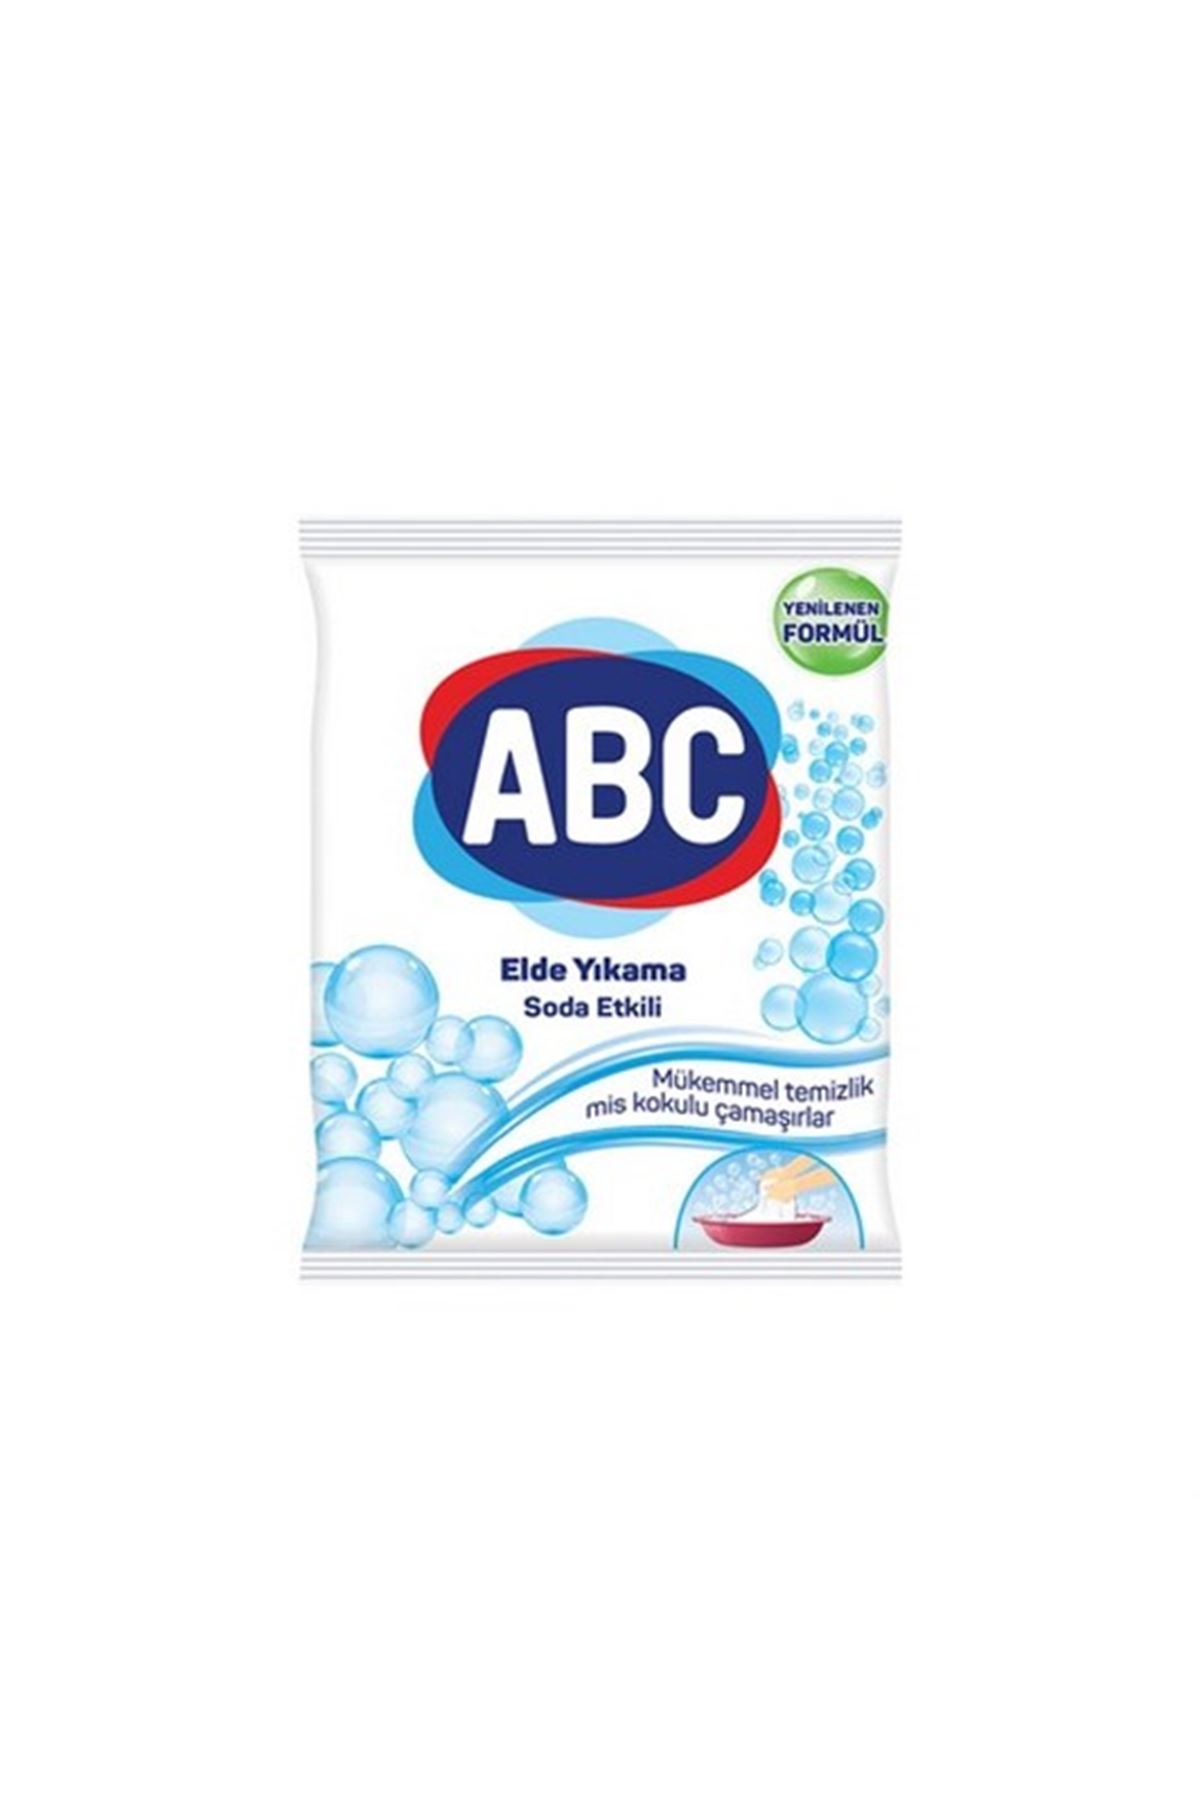 ABC Elde Yıkama Soda Etkili Deterjan 600 Gram